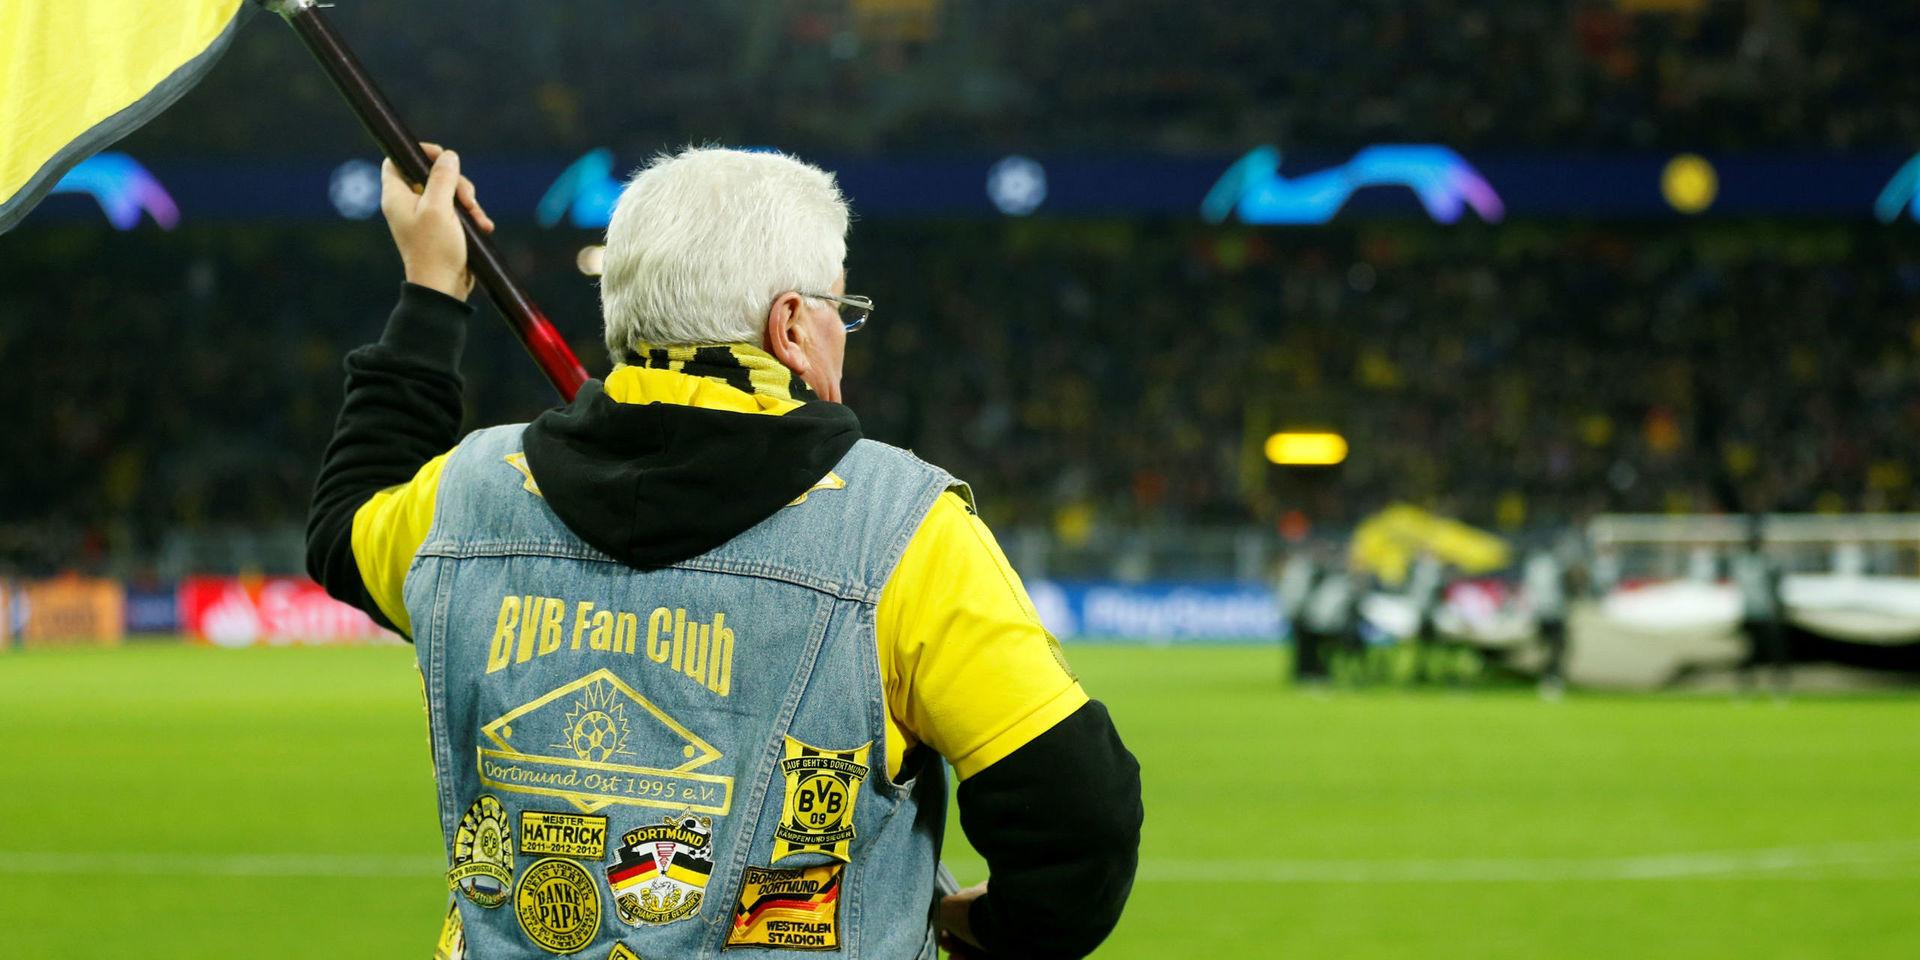 En supporter till Borussia Dortmund klädd i gult och svart som är lagets färger. 